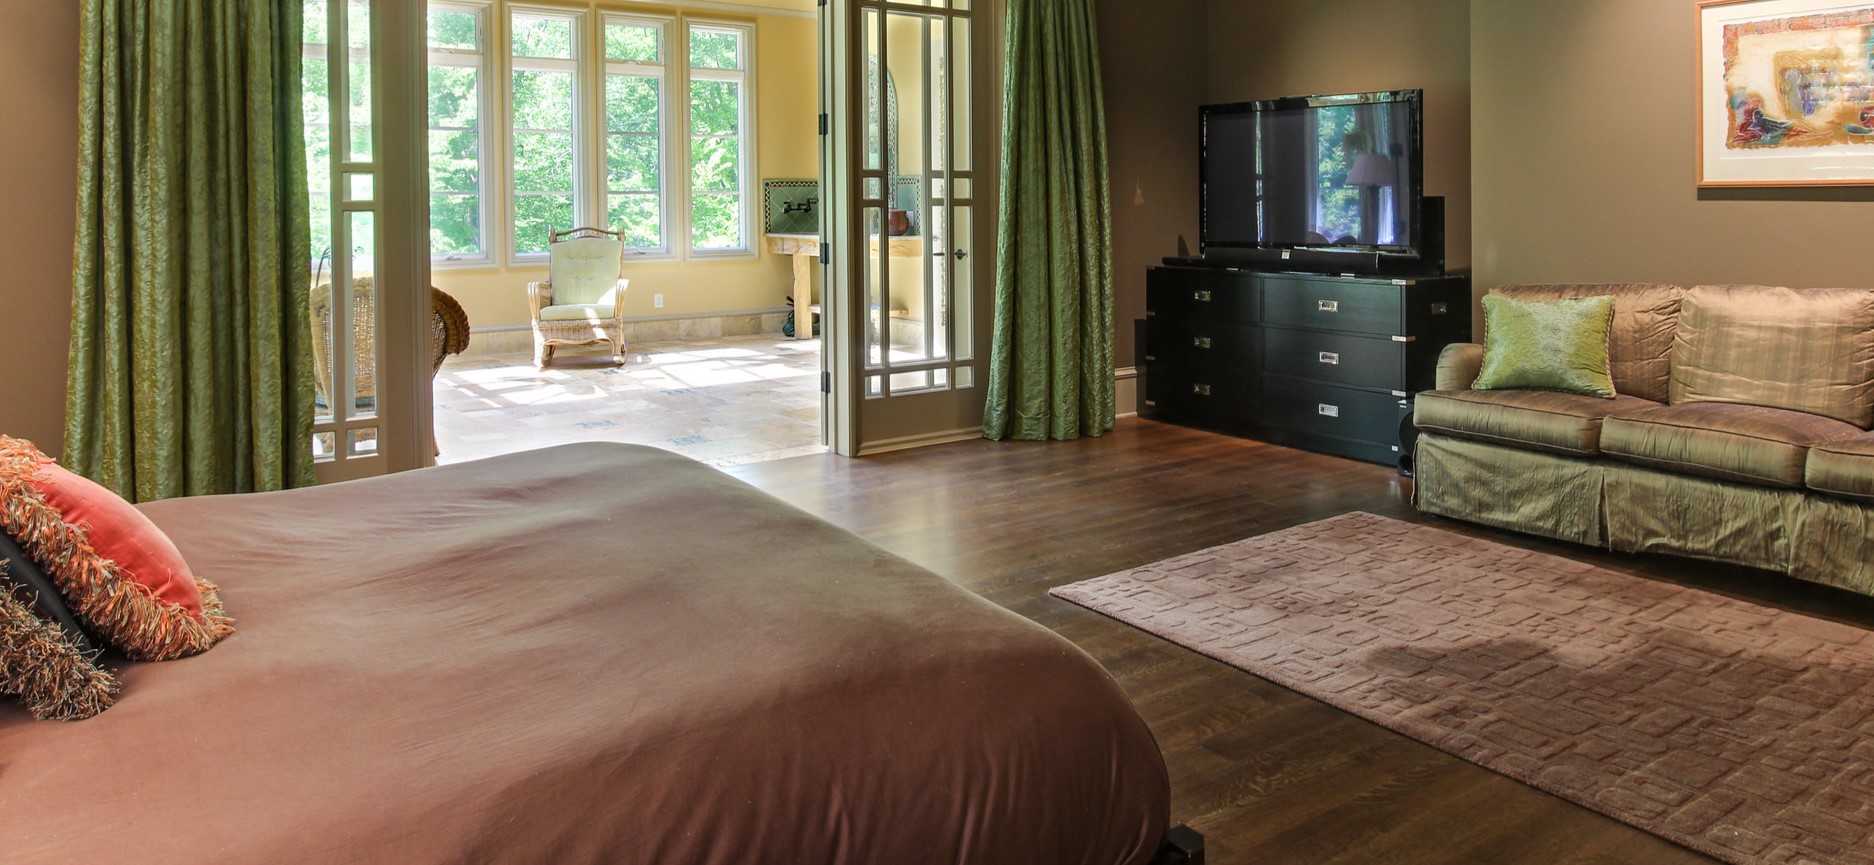 Спальня, оформленная по фен-шуй, поможет быстрее расслабиться перед сном